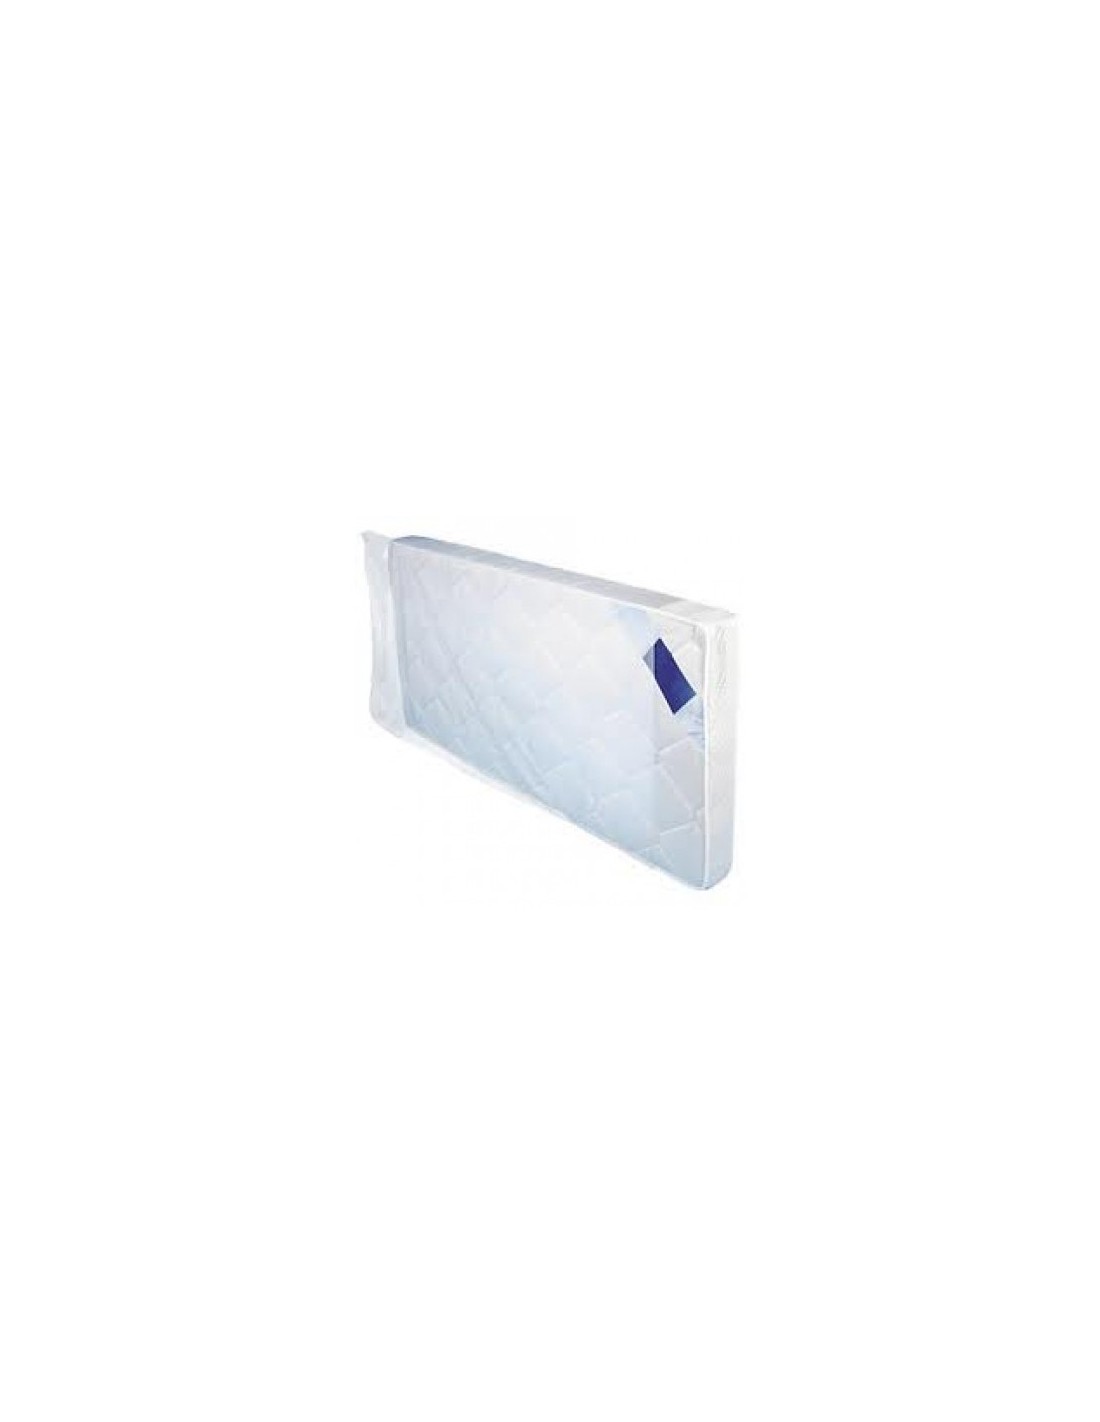 n.5 sacchi custodia di plastica per materasso singolo : :  Elettronica